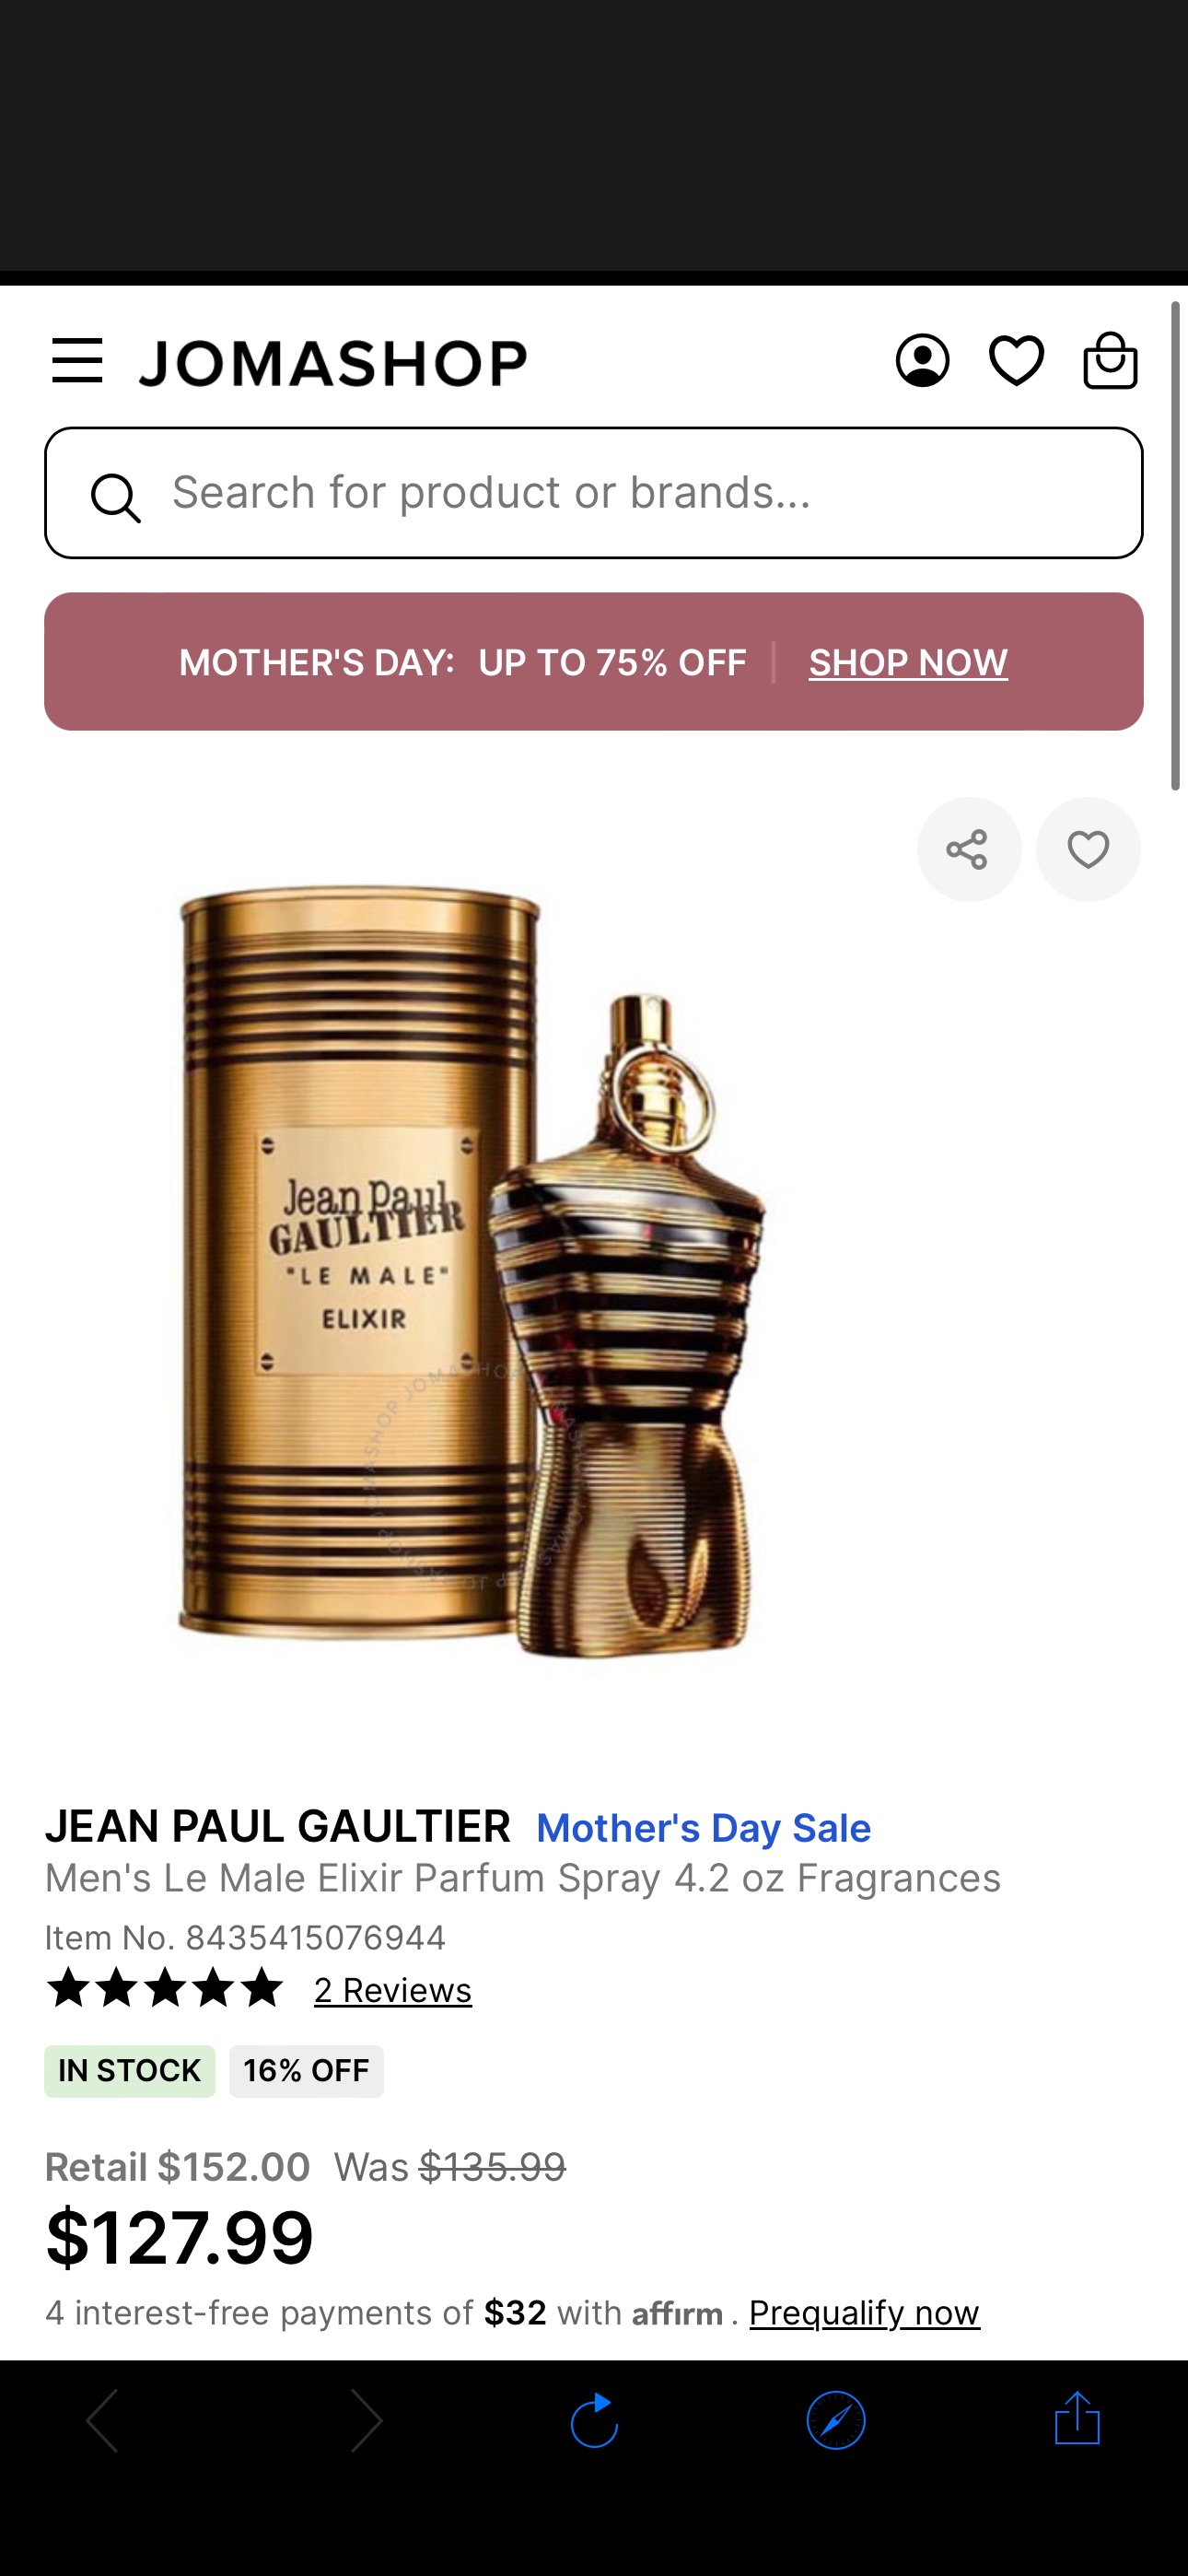 Jean Paul Gaultier Men's Le Male Elixir Parfum Spray 4.2 oz Fragrances 8435415076944 - Fragrances & Beauty, Le Male Elixir - Jomashop